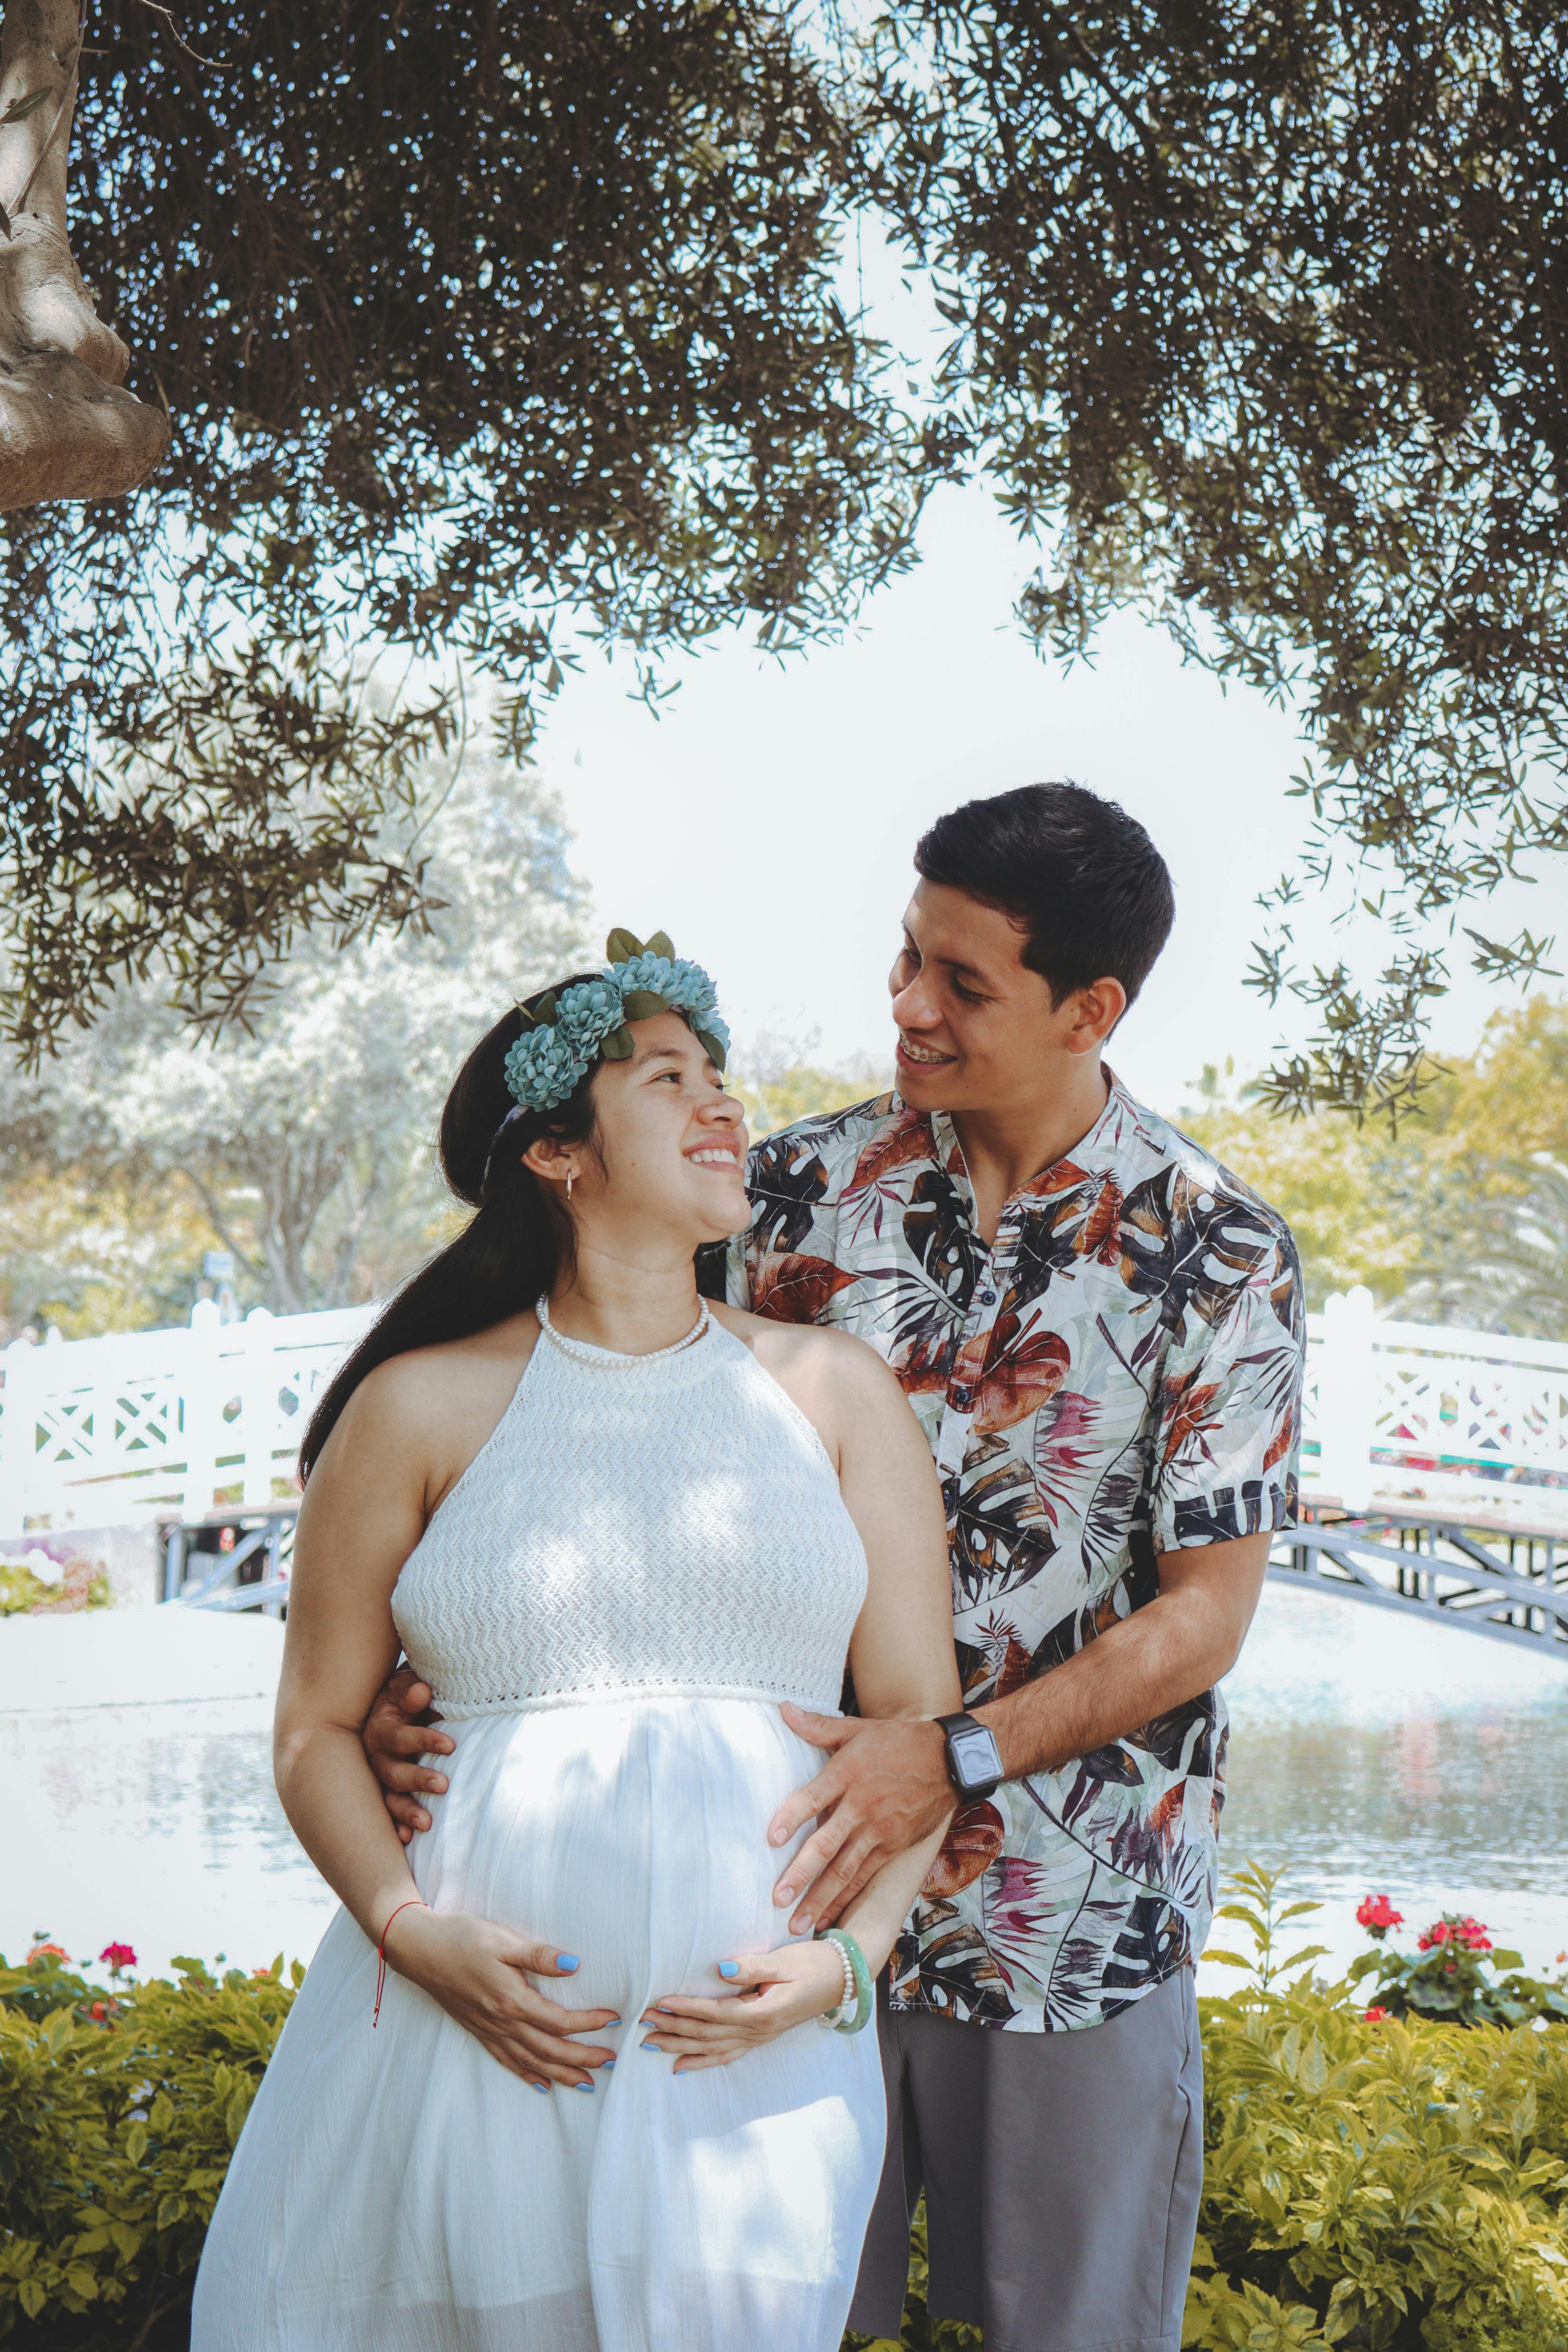 Une femme enceinte posant avec son partenaire | Source : Pexels